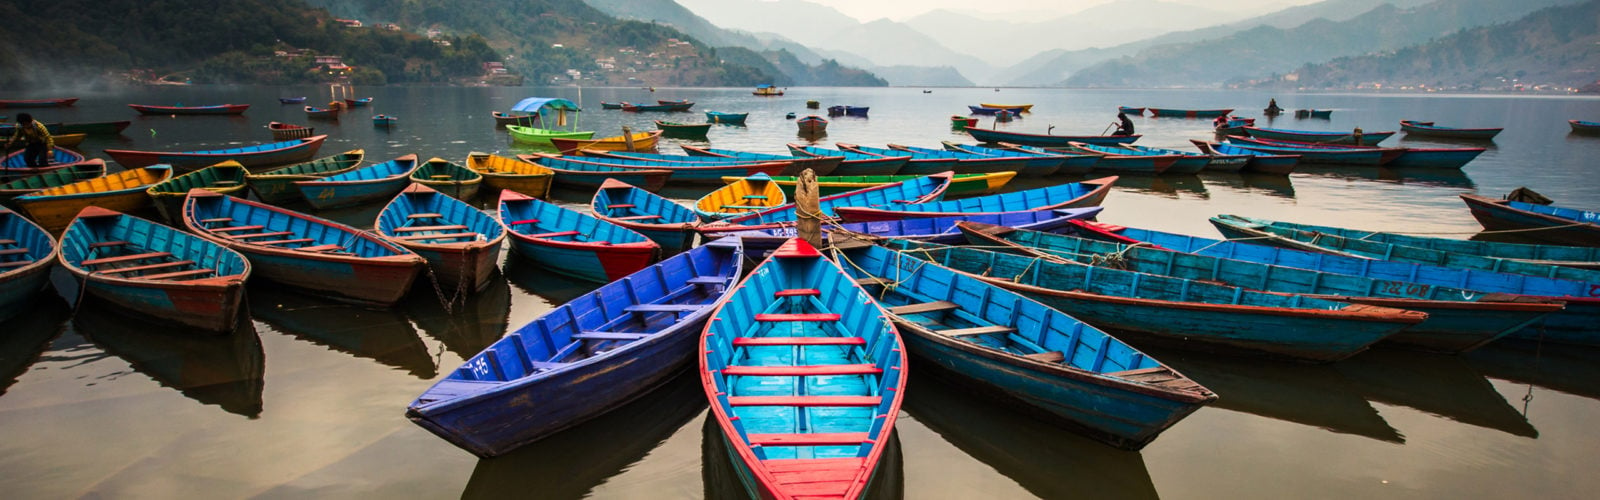 pokhara-lake-boats